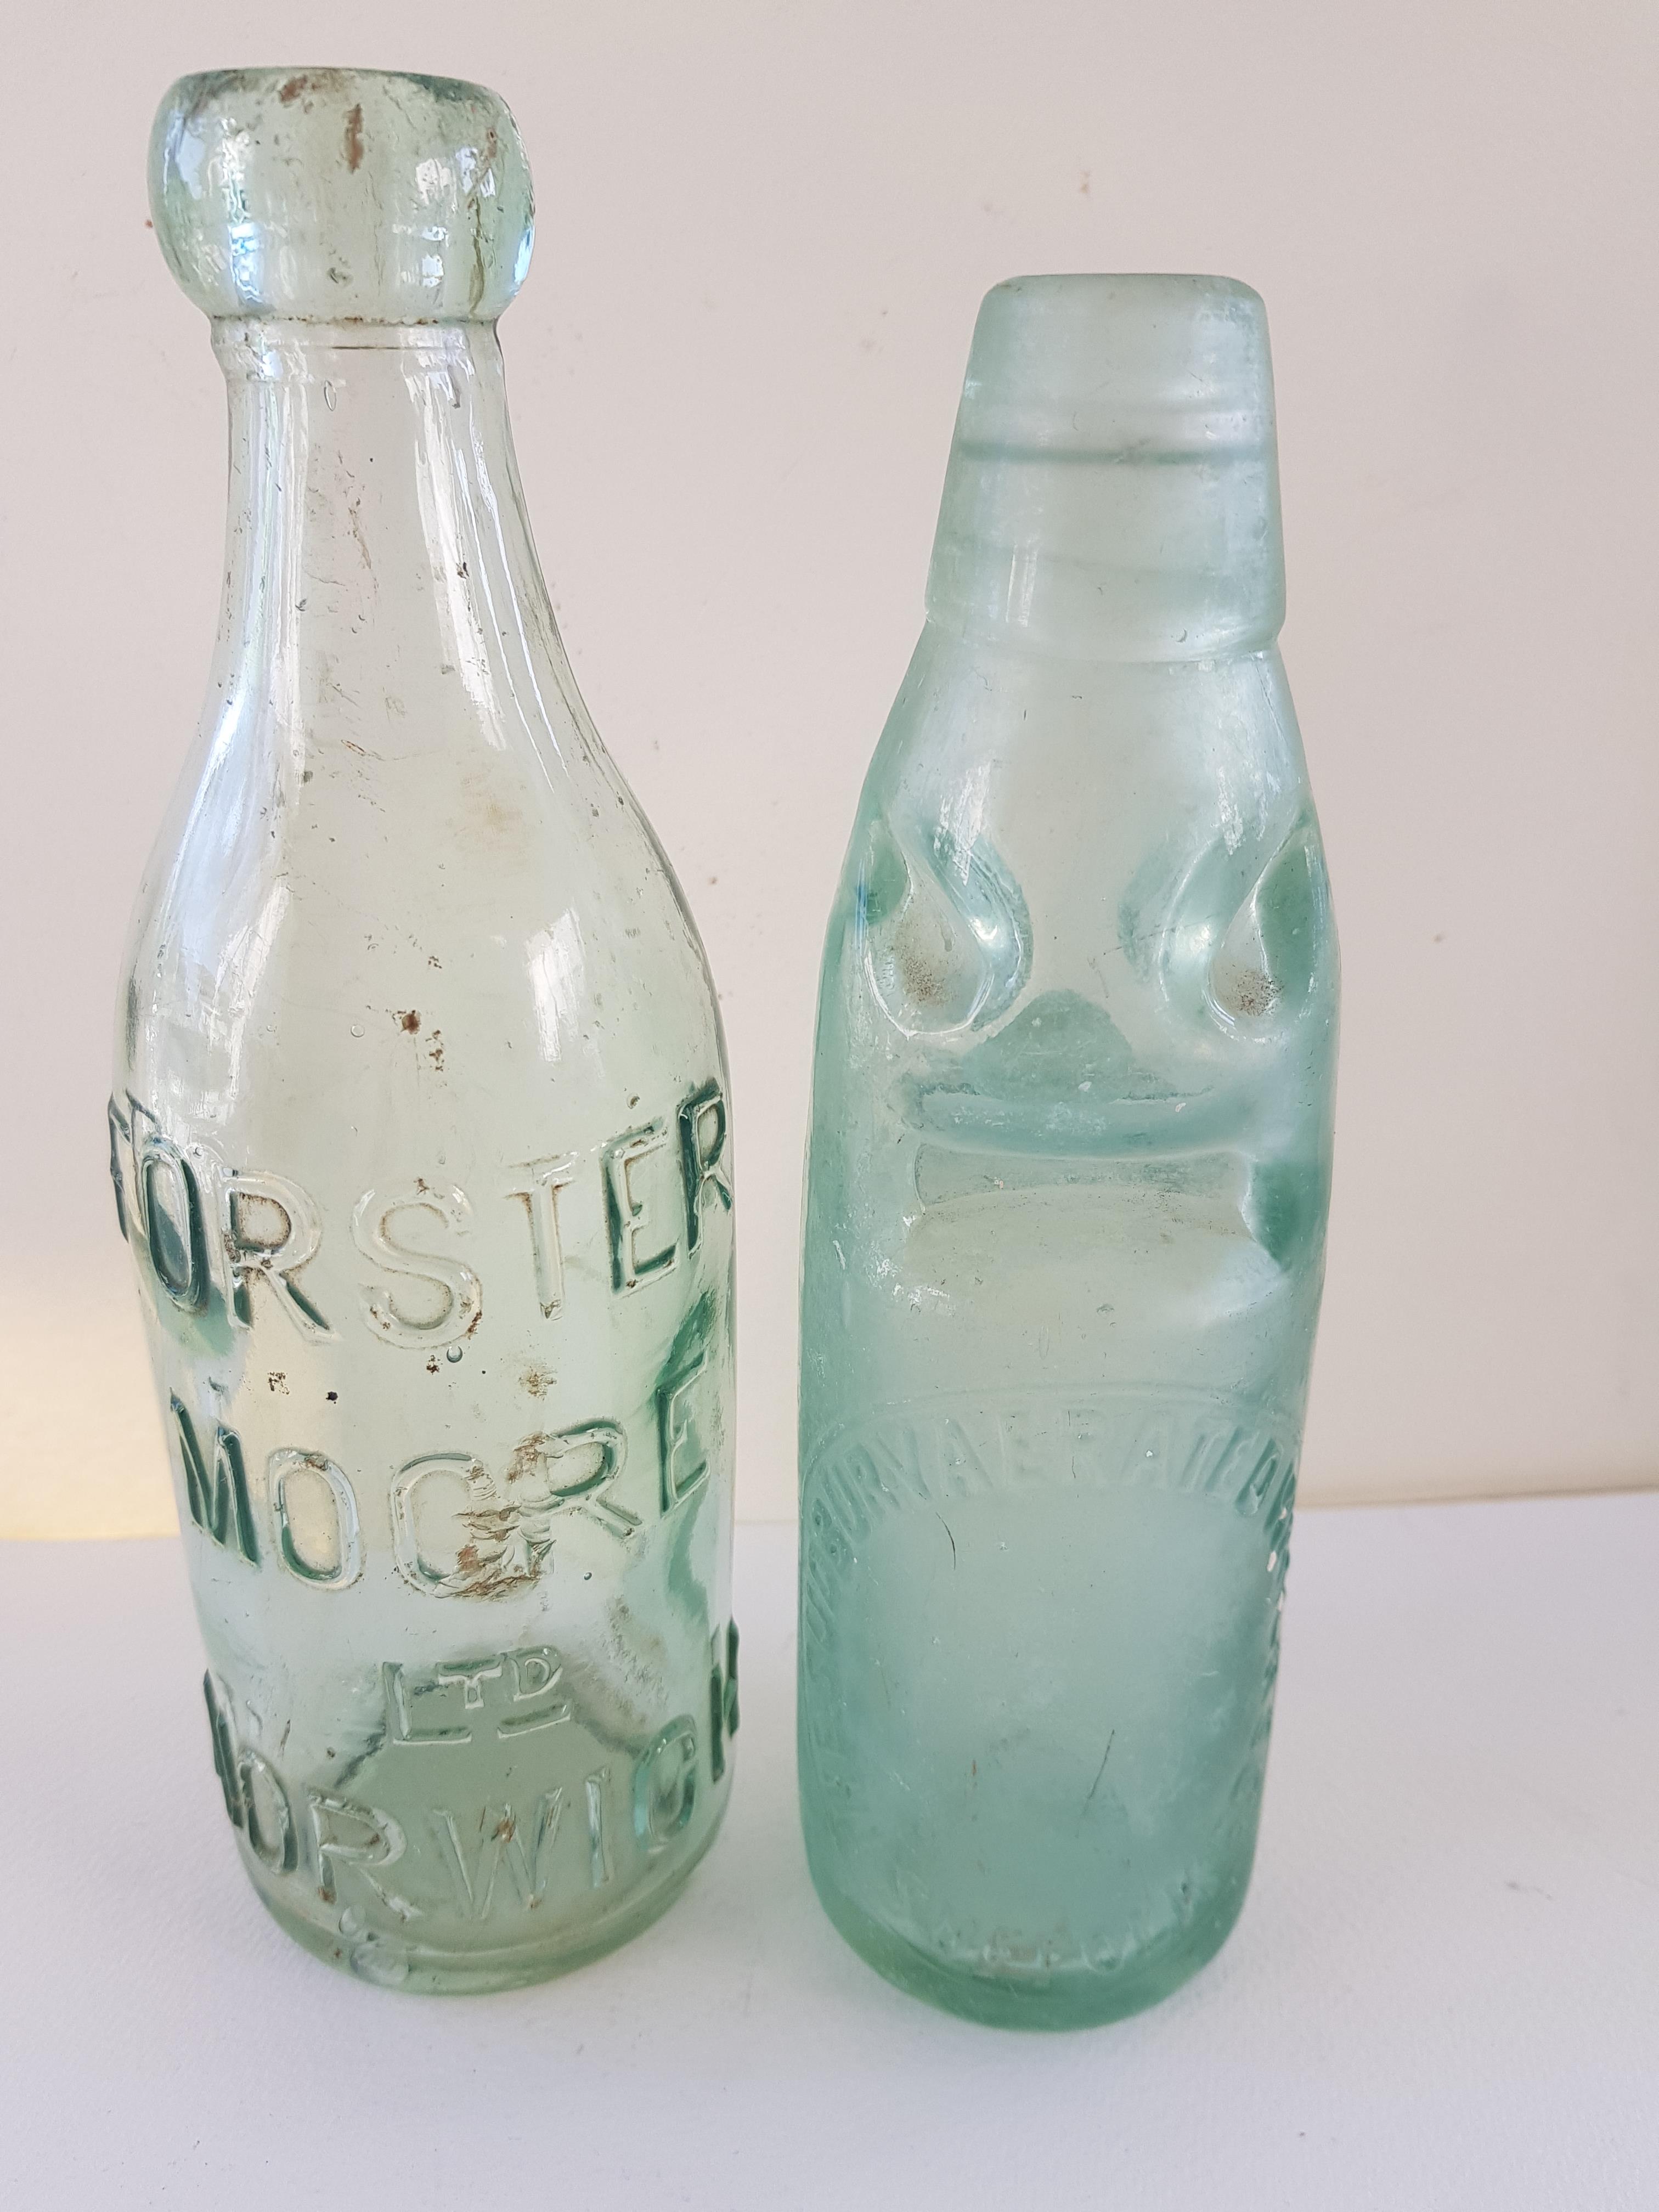 5 Vintage Green Bottles - Image 3 of 3